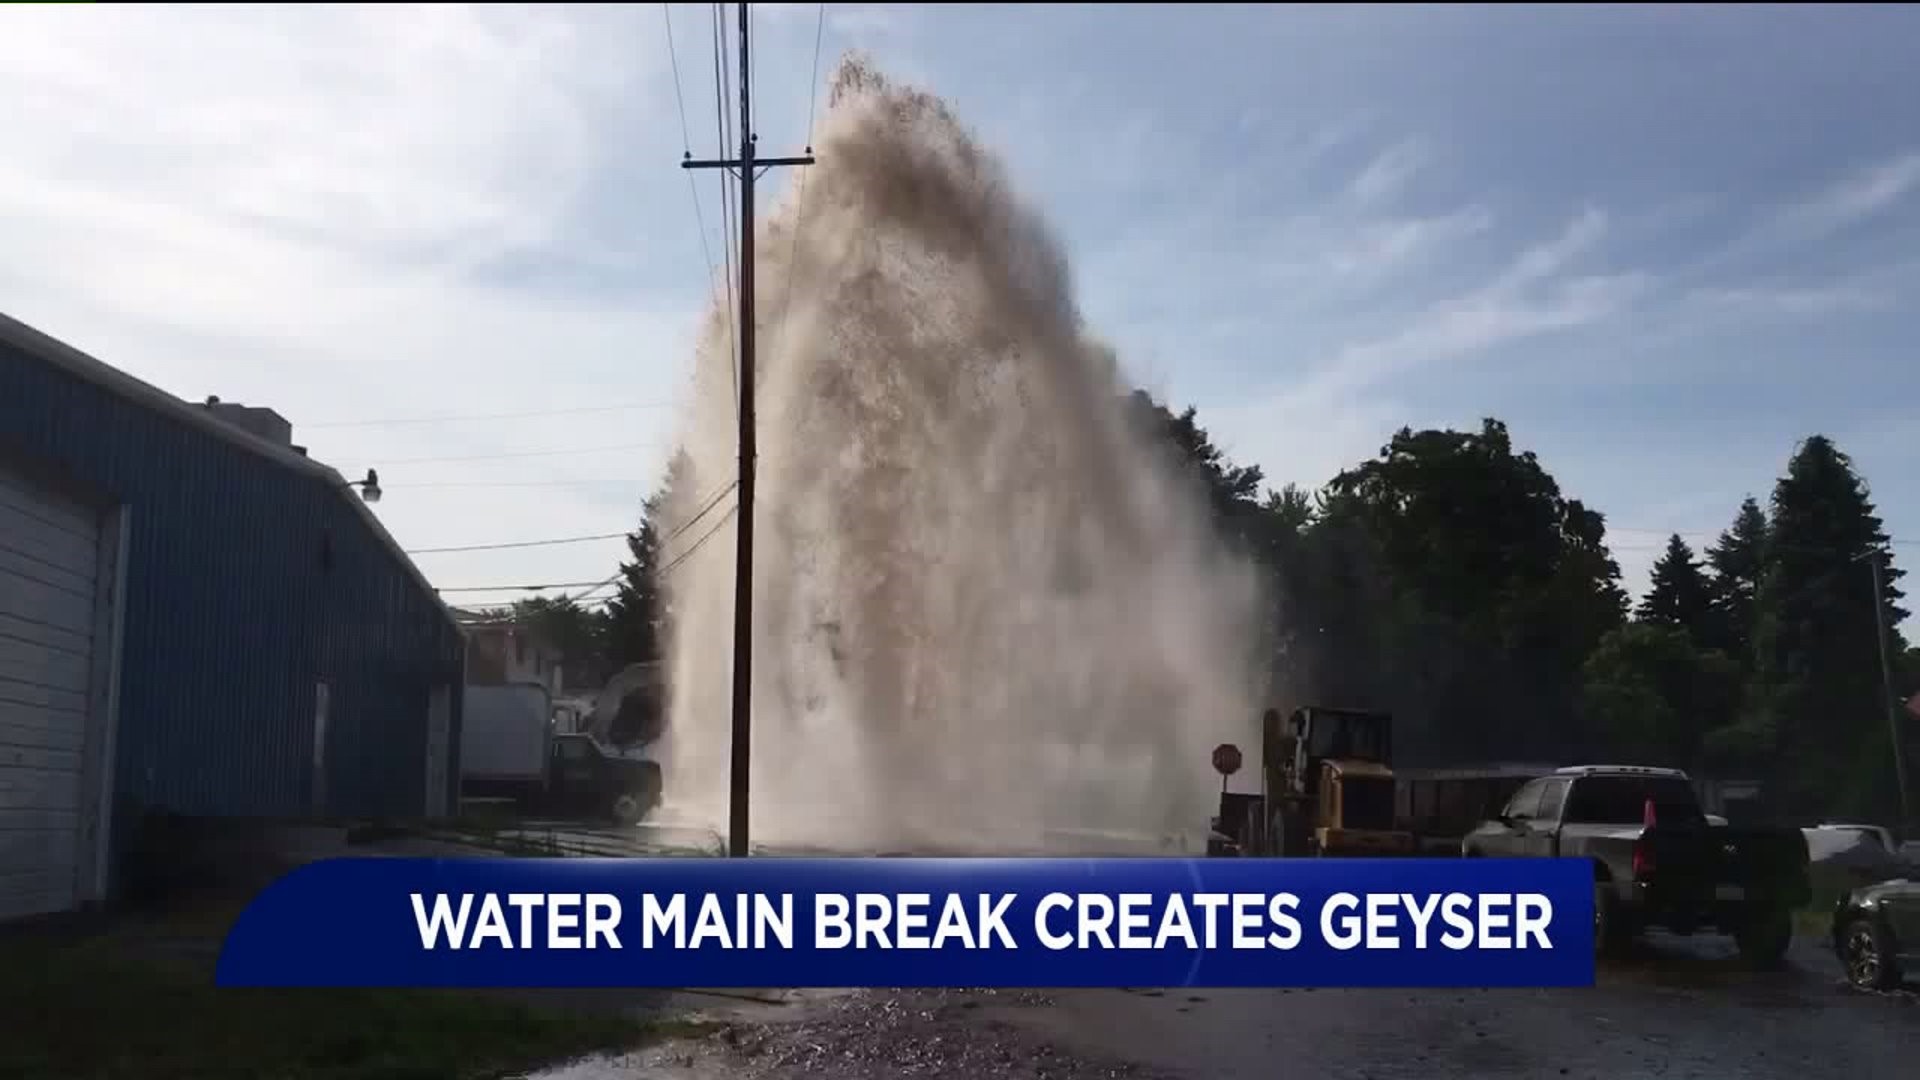 Geyser of Water Gushes from Main Break in Scranton